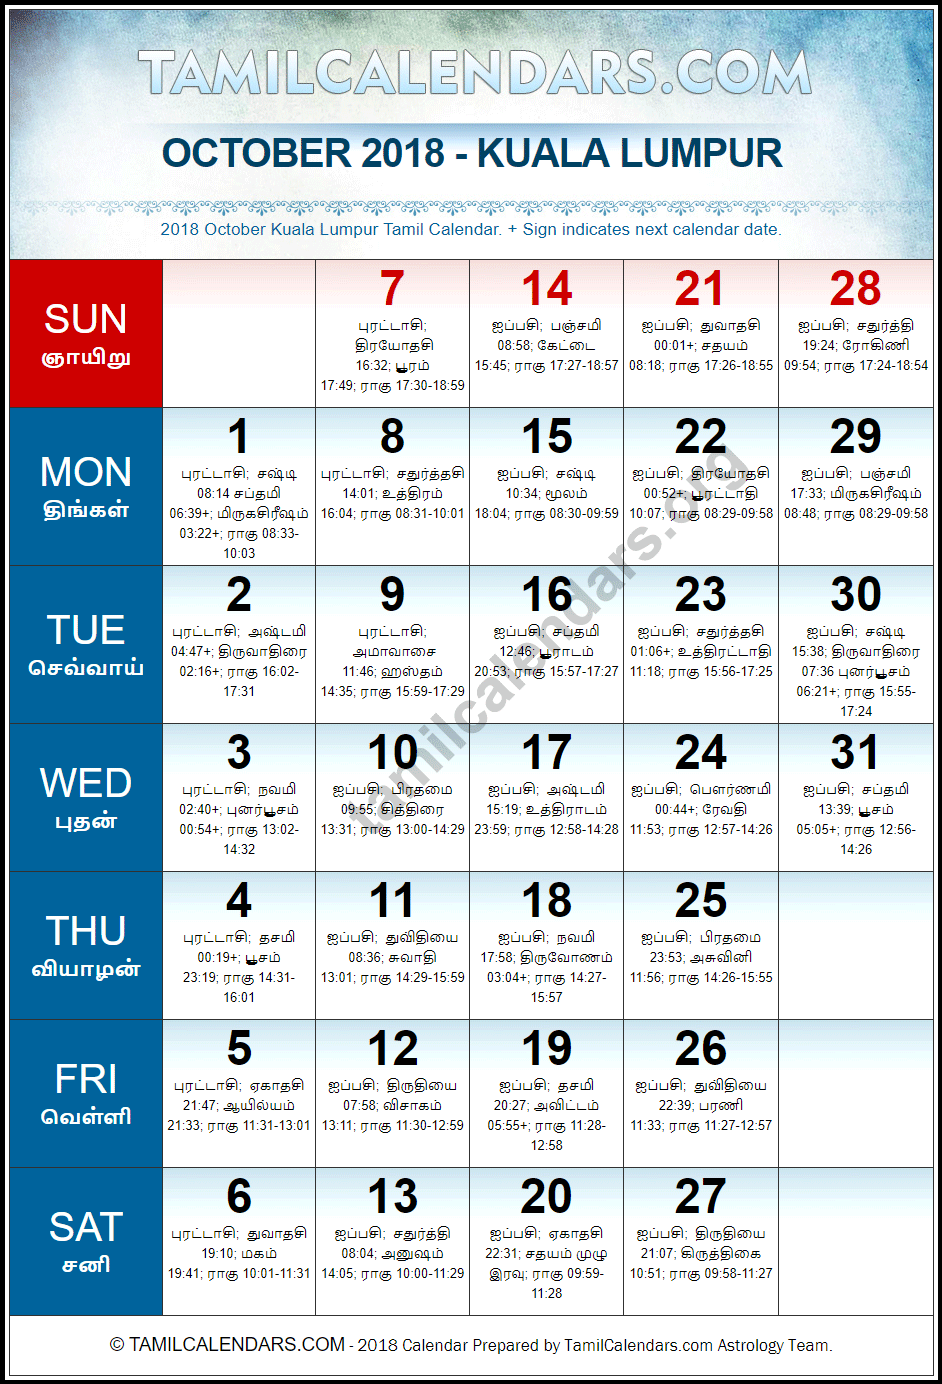 October 2018 Tamil Calendar for Malaysia (Kuala Lumpur)